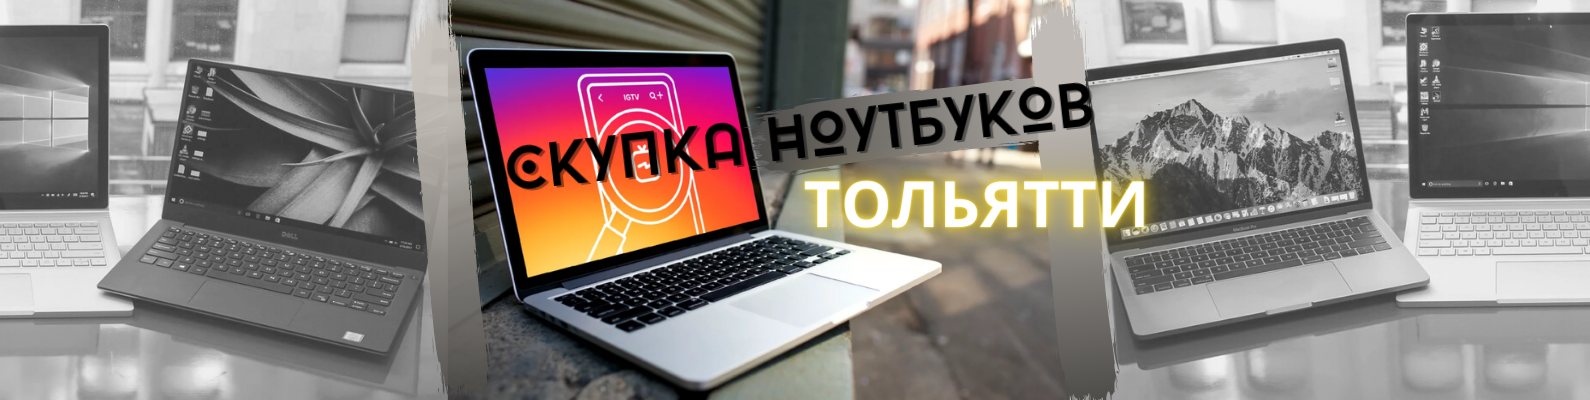 Купить Ноутбук Бу В Тольятти Недорого